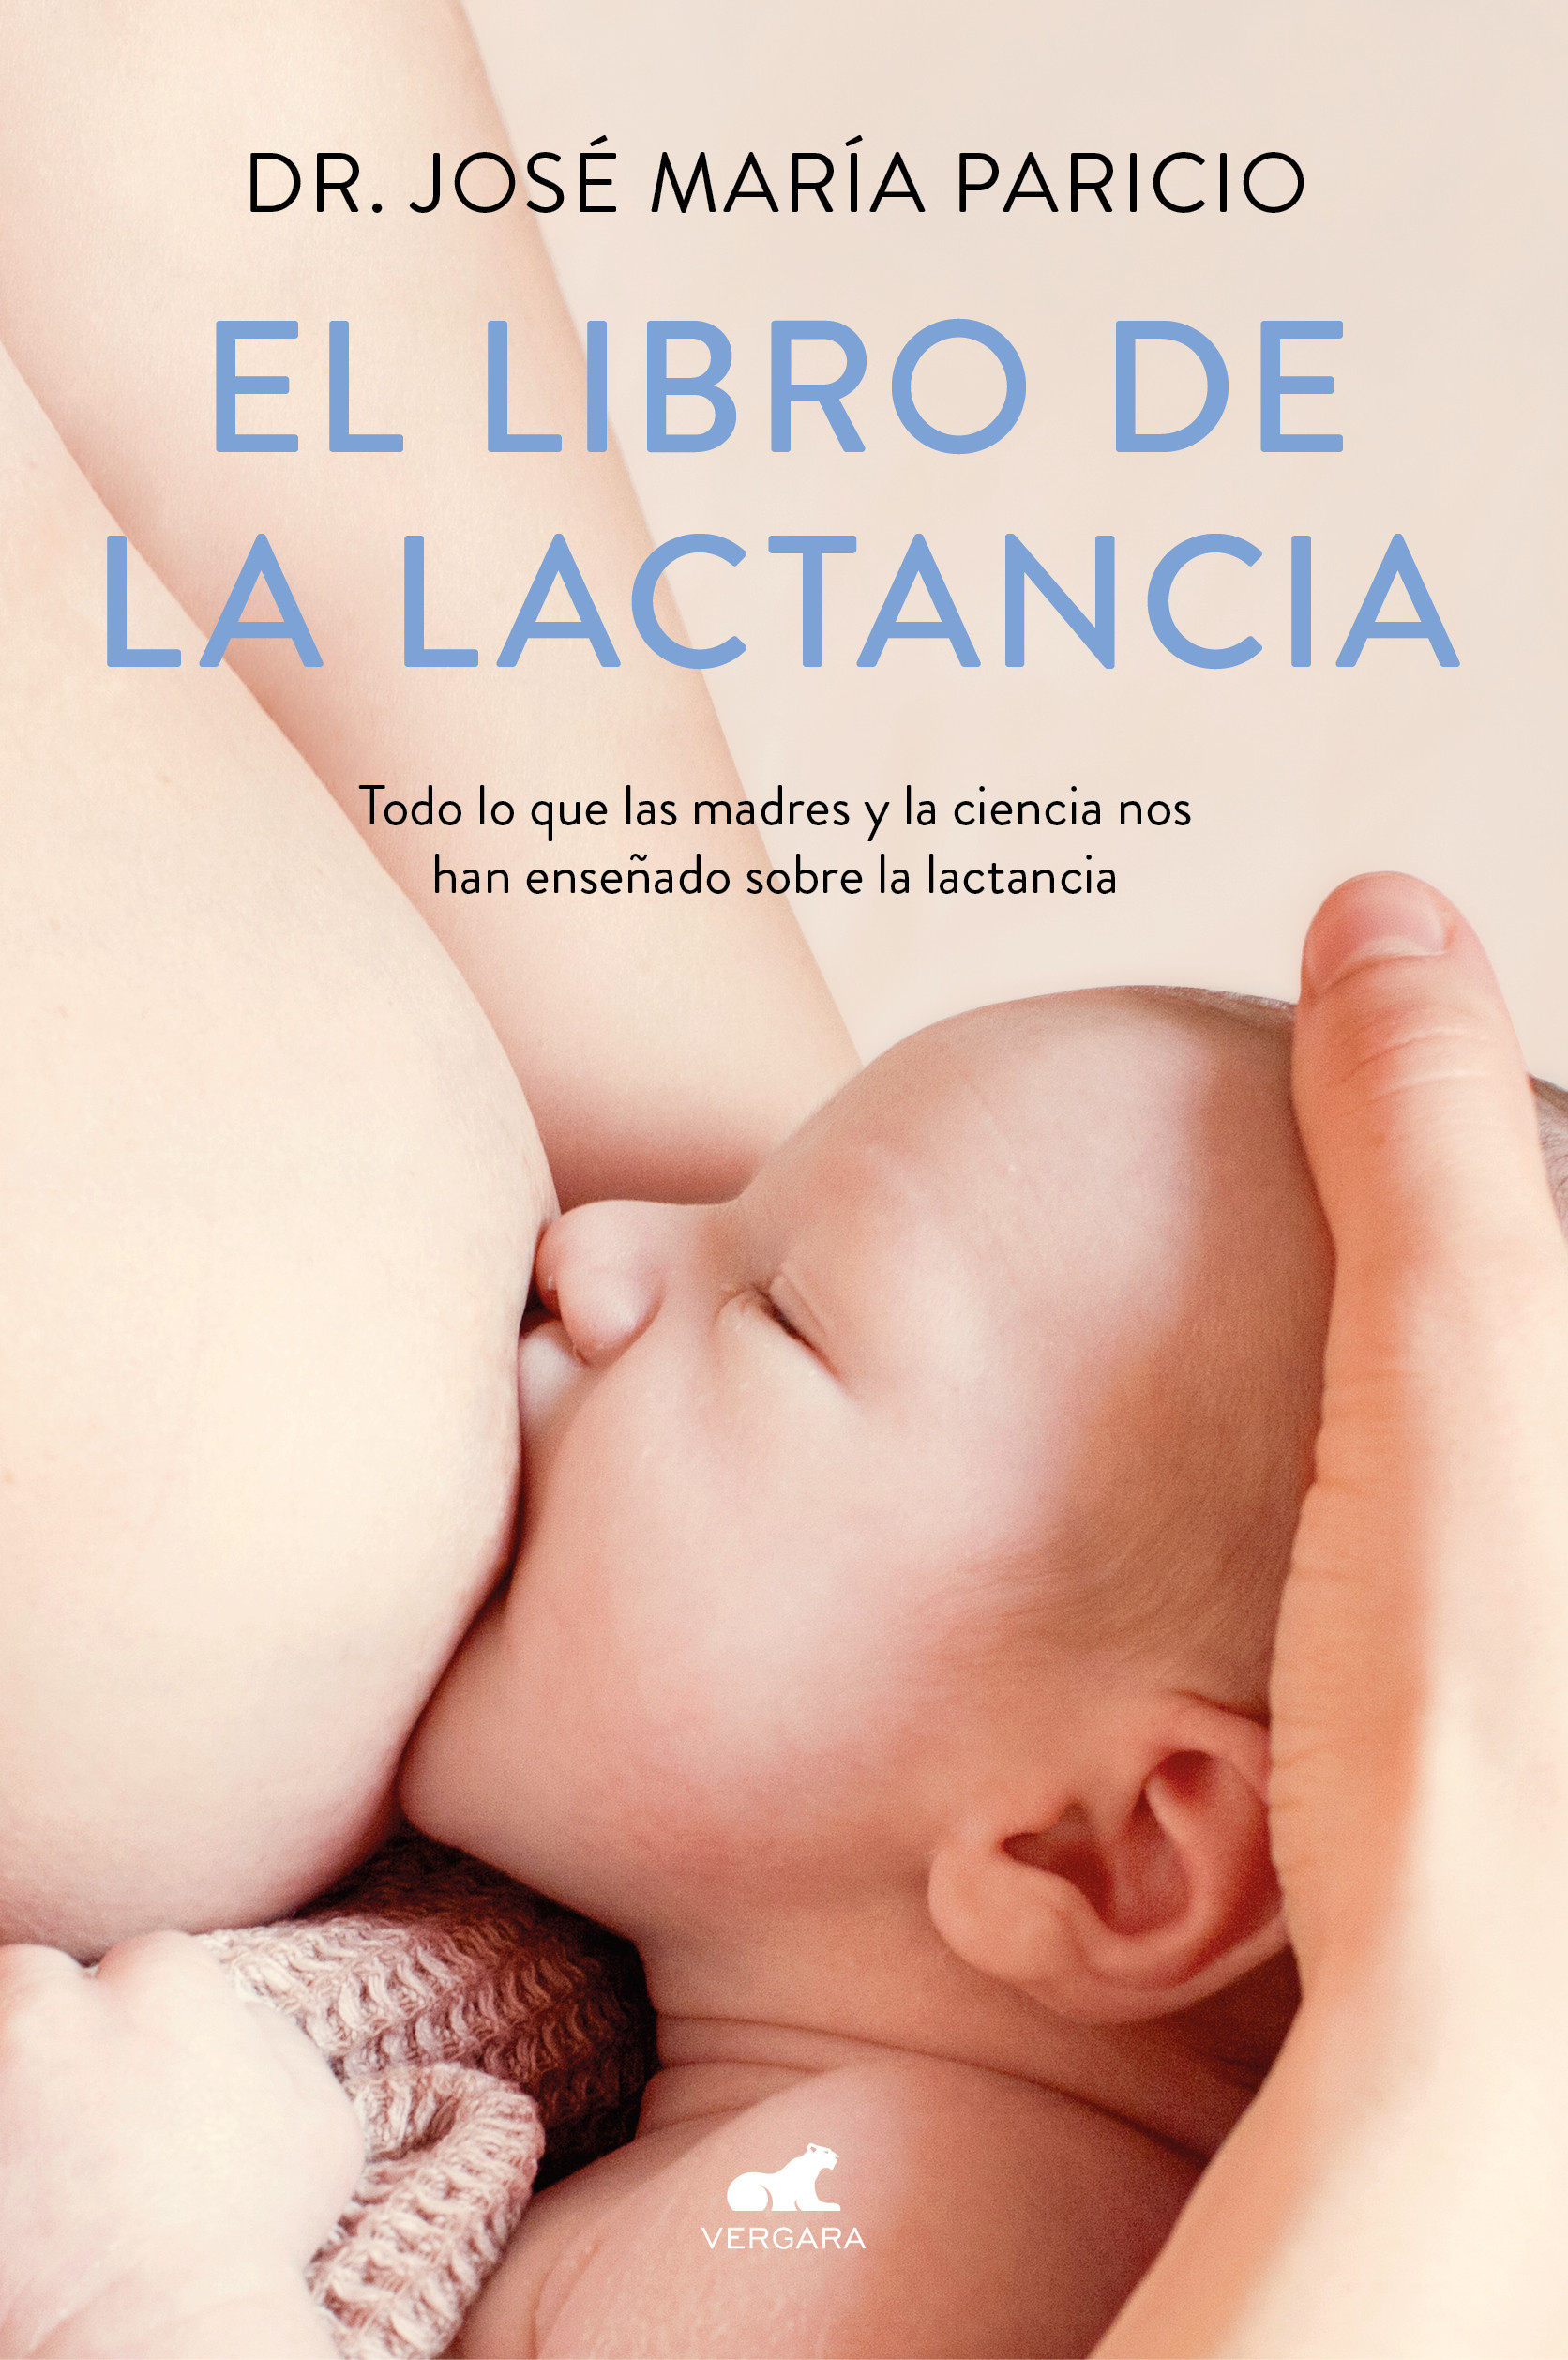 Lactancia materna: manual de uso - Penguin Libros ES